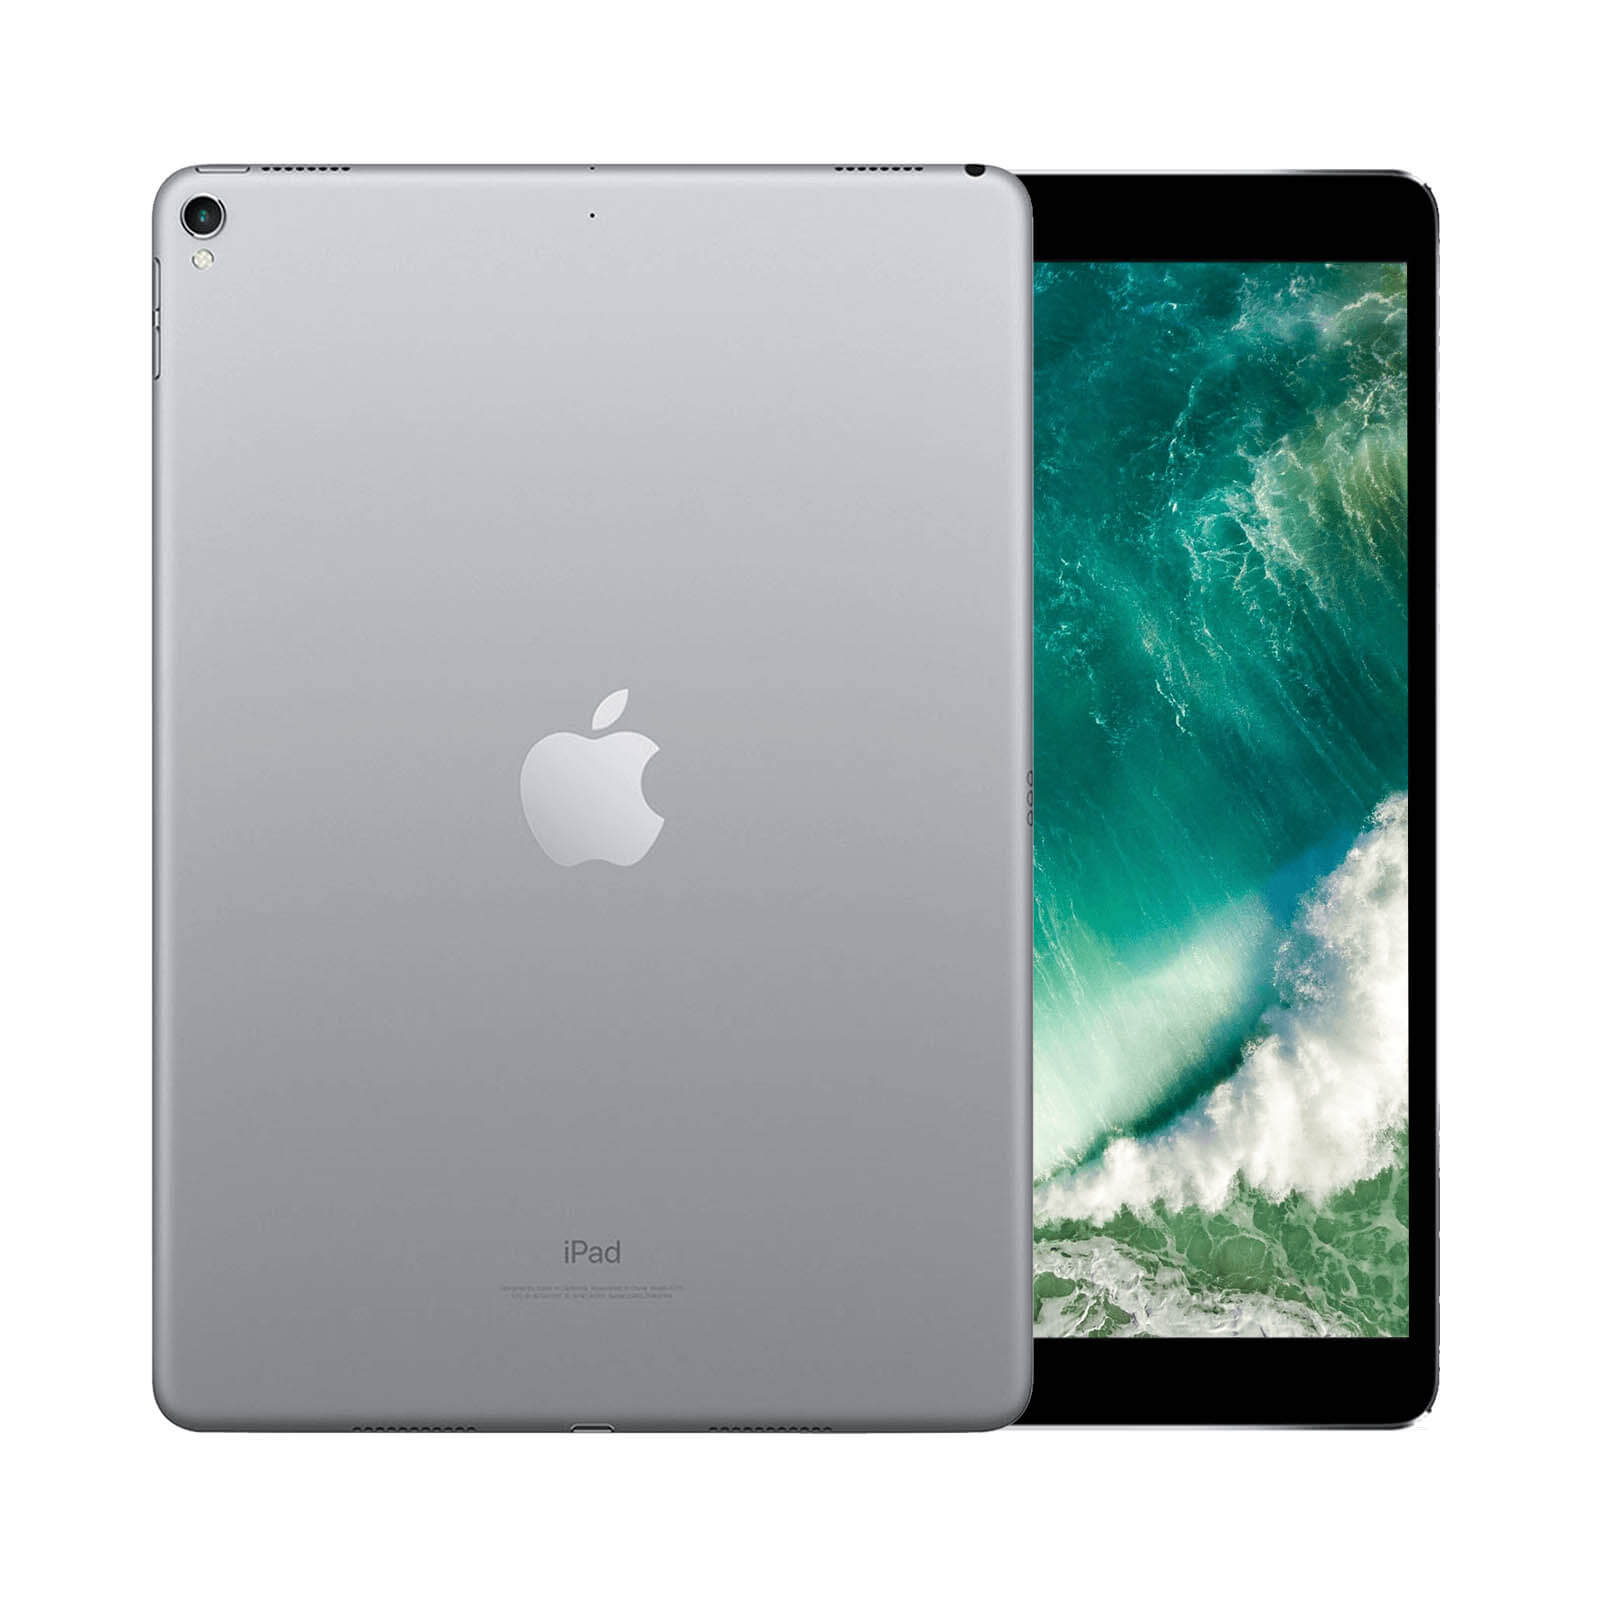 iPad Pro 10.5 Inch 64GB Silver Good - WiFi